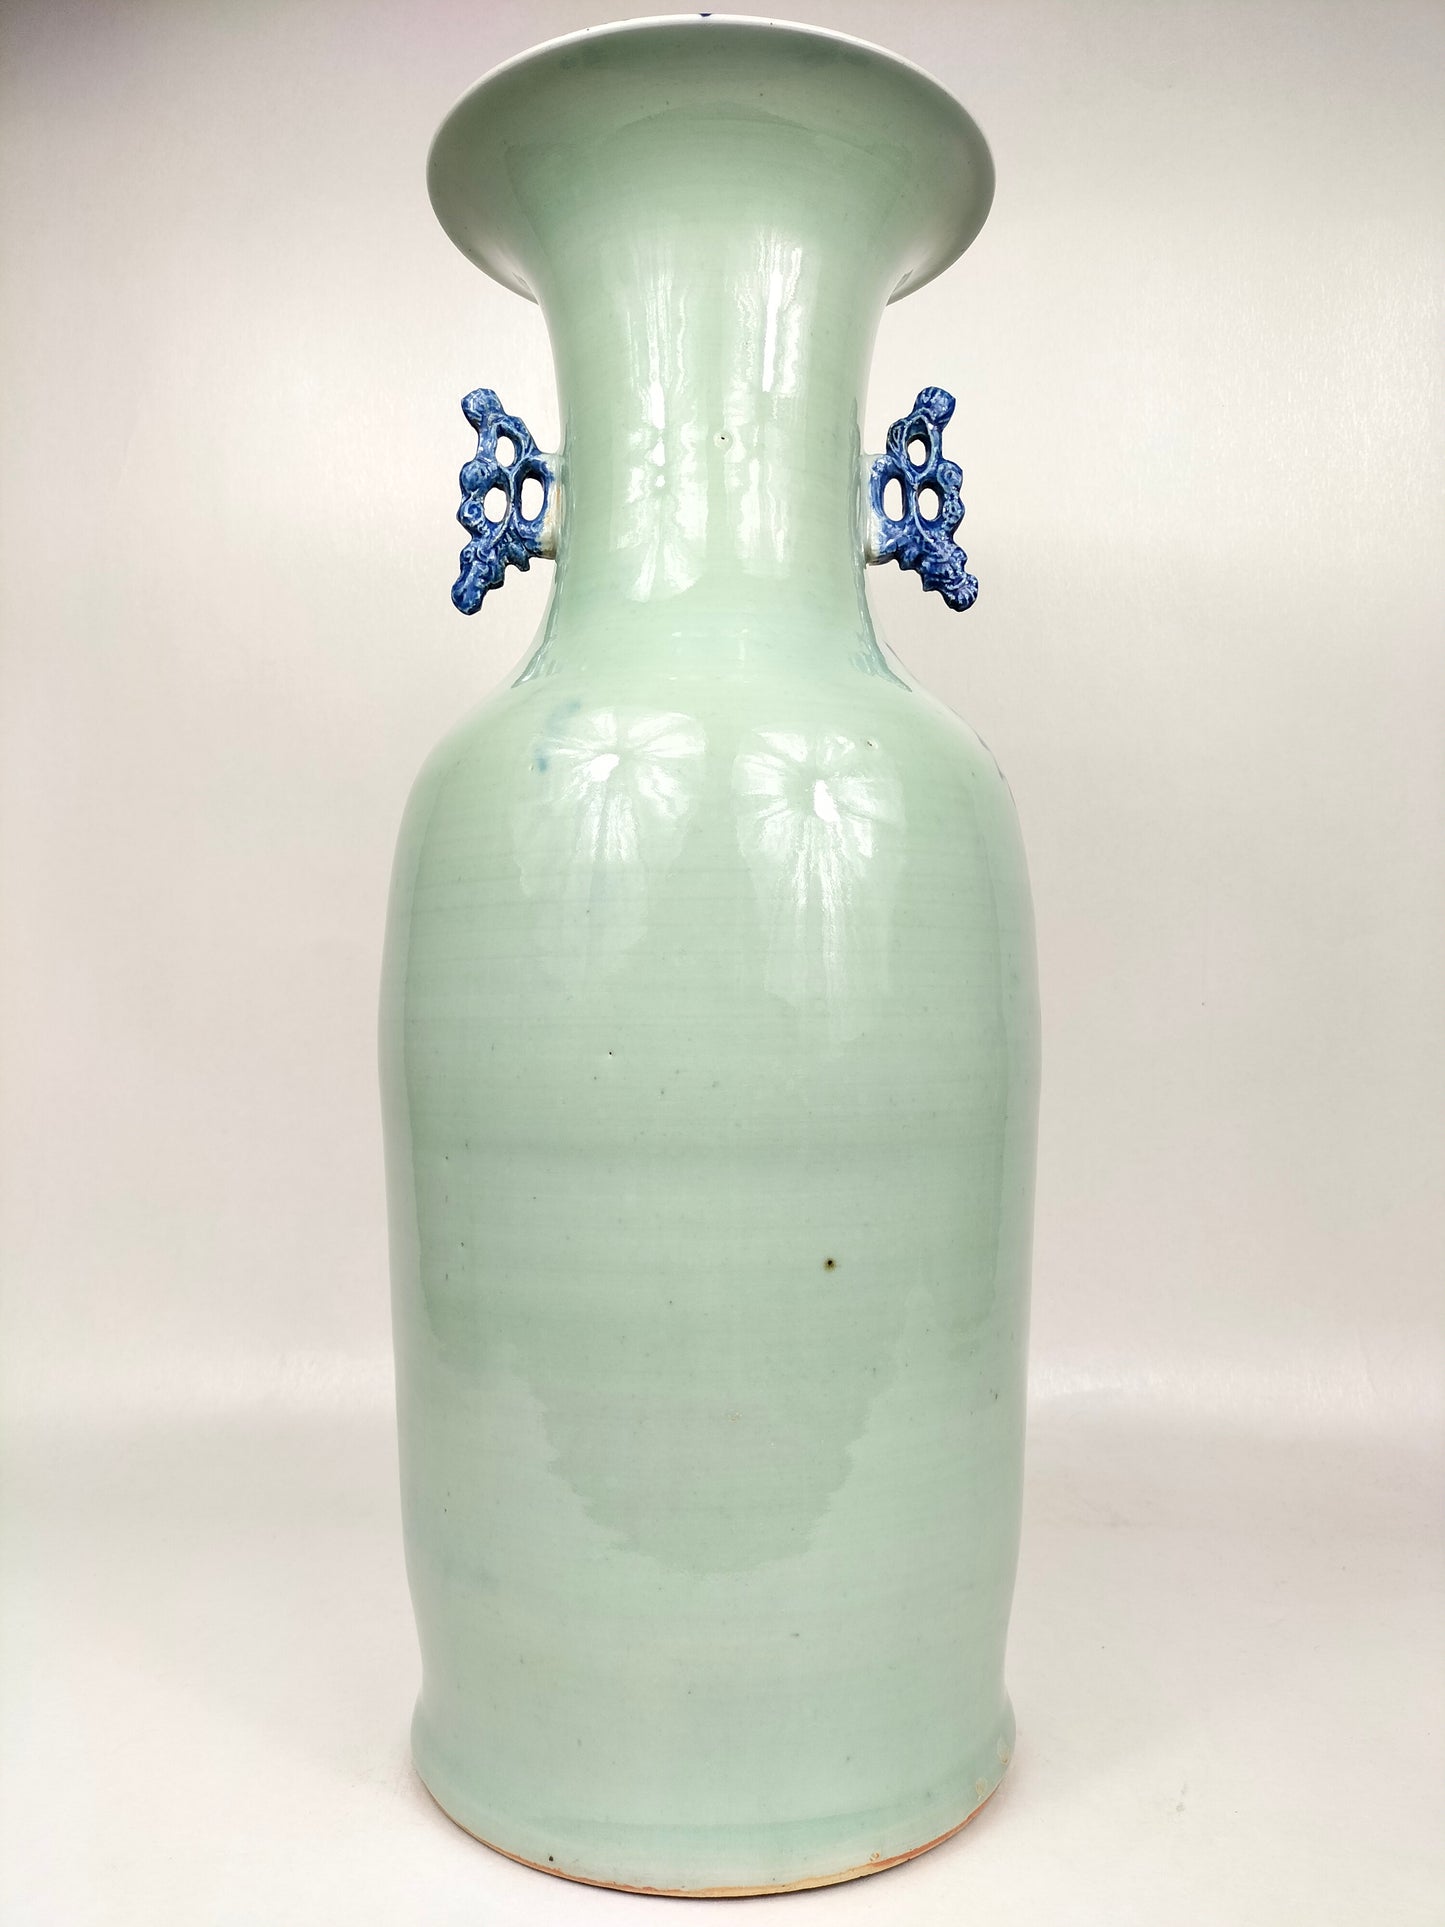 Grande vaso antigo de celadon chinês decorado com veados e flores // Dinastia Qing - século XIX